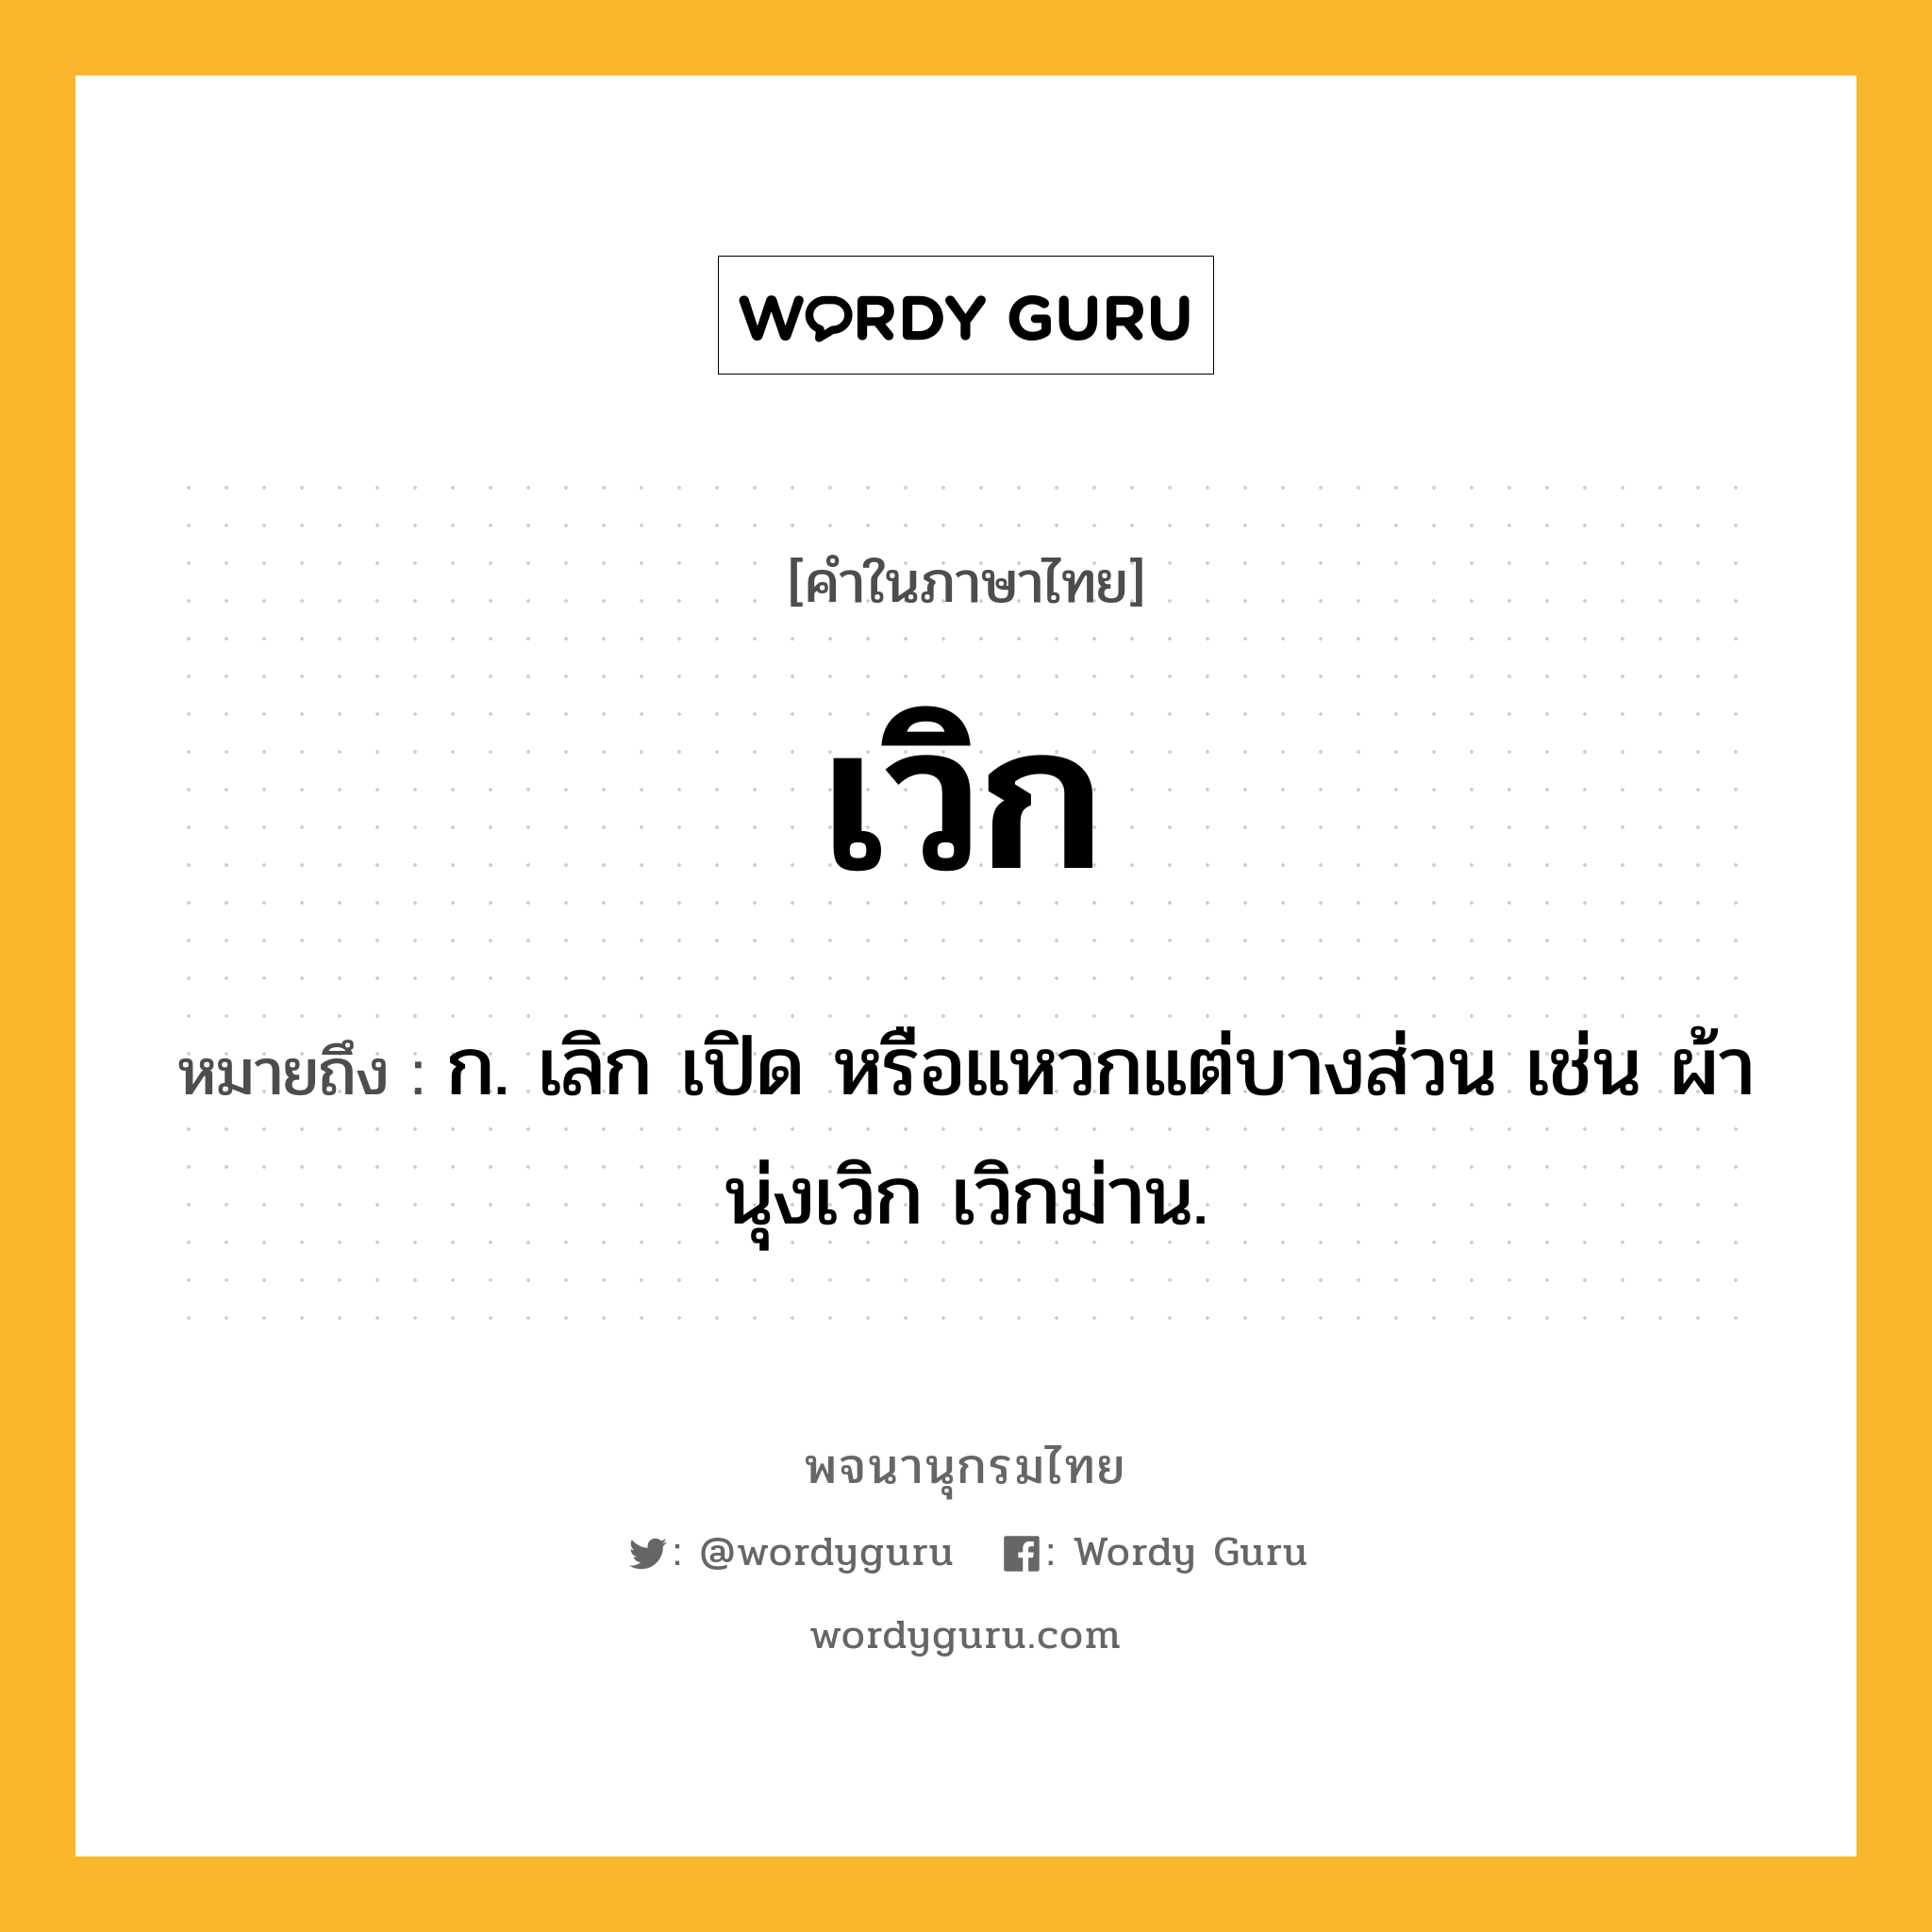 เวิก หมายถึงอะไร?, คำในภาษาไทย เวิก หมายถึง ก. เลิก เปิด หรือแหวกแต่บางส่วน เช่น ผ้านุ่งเวิก เวิกม่าน.